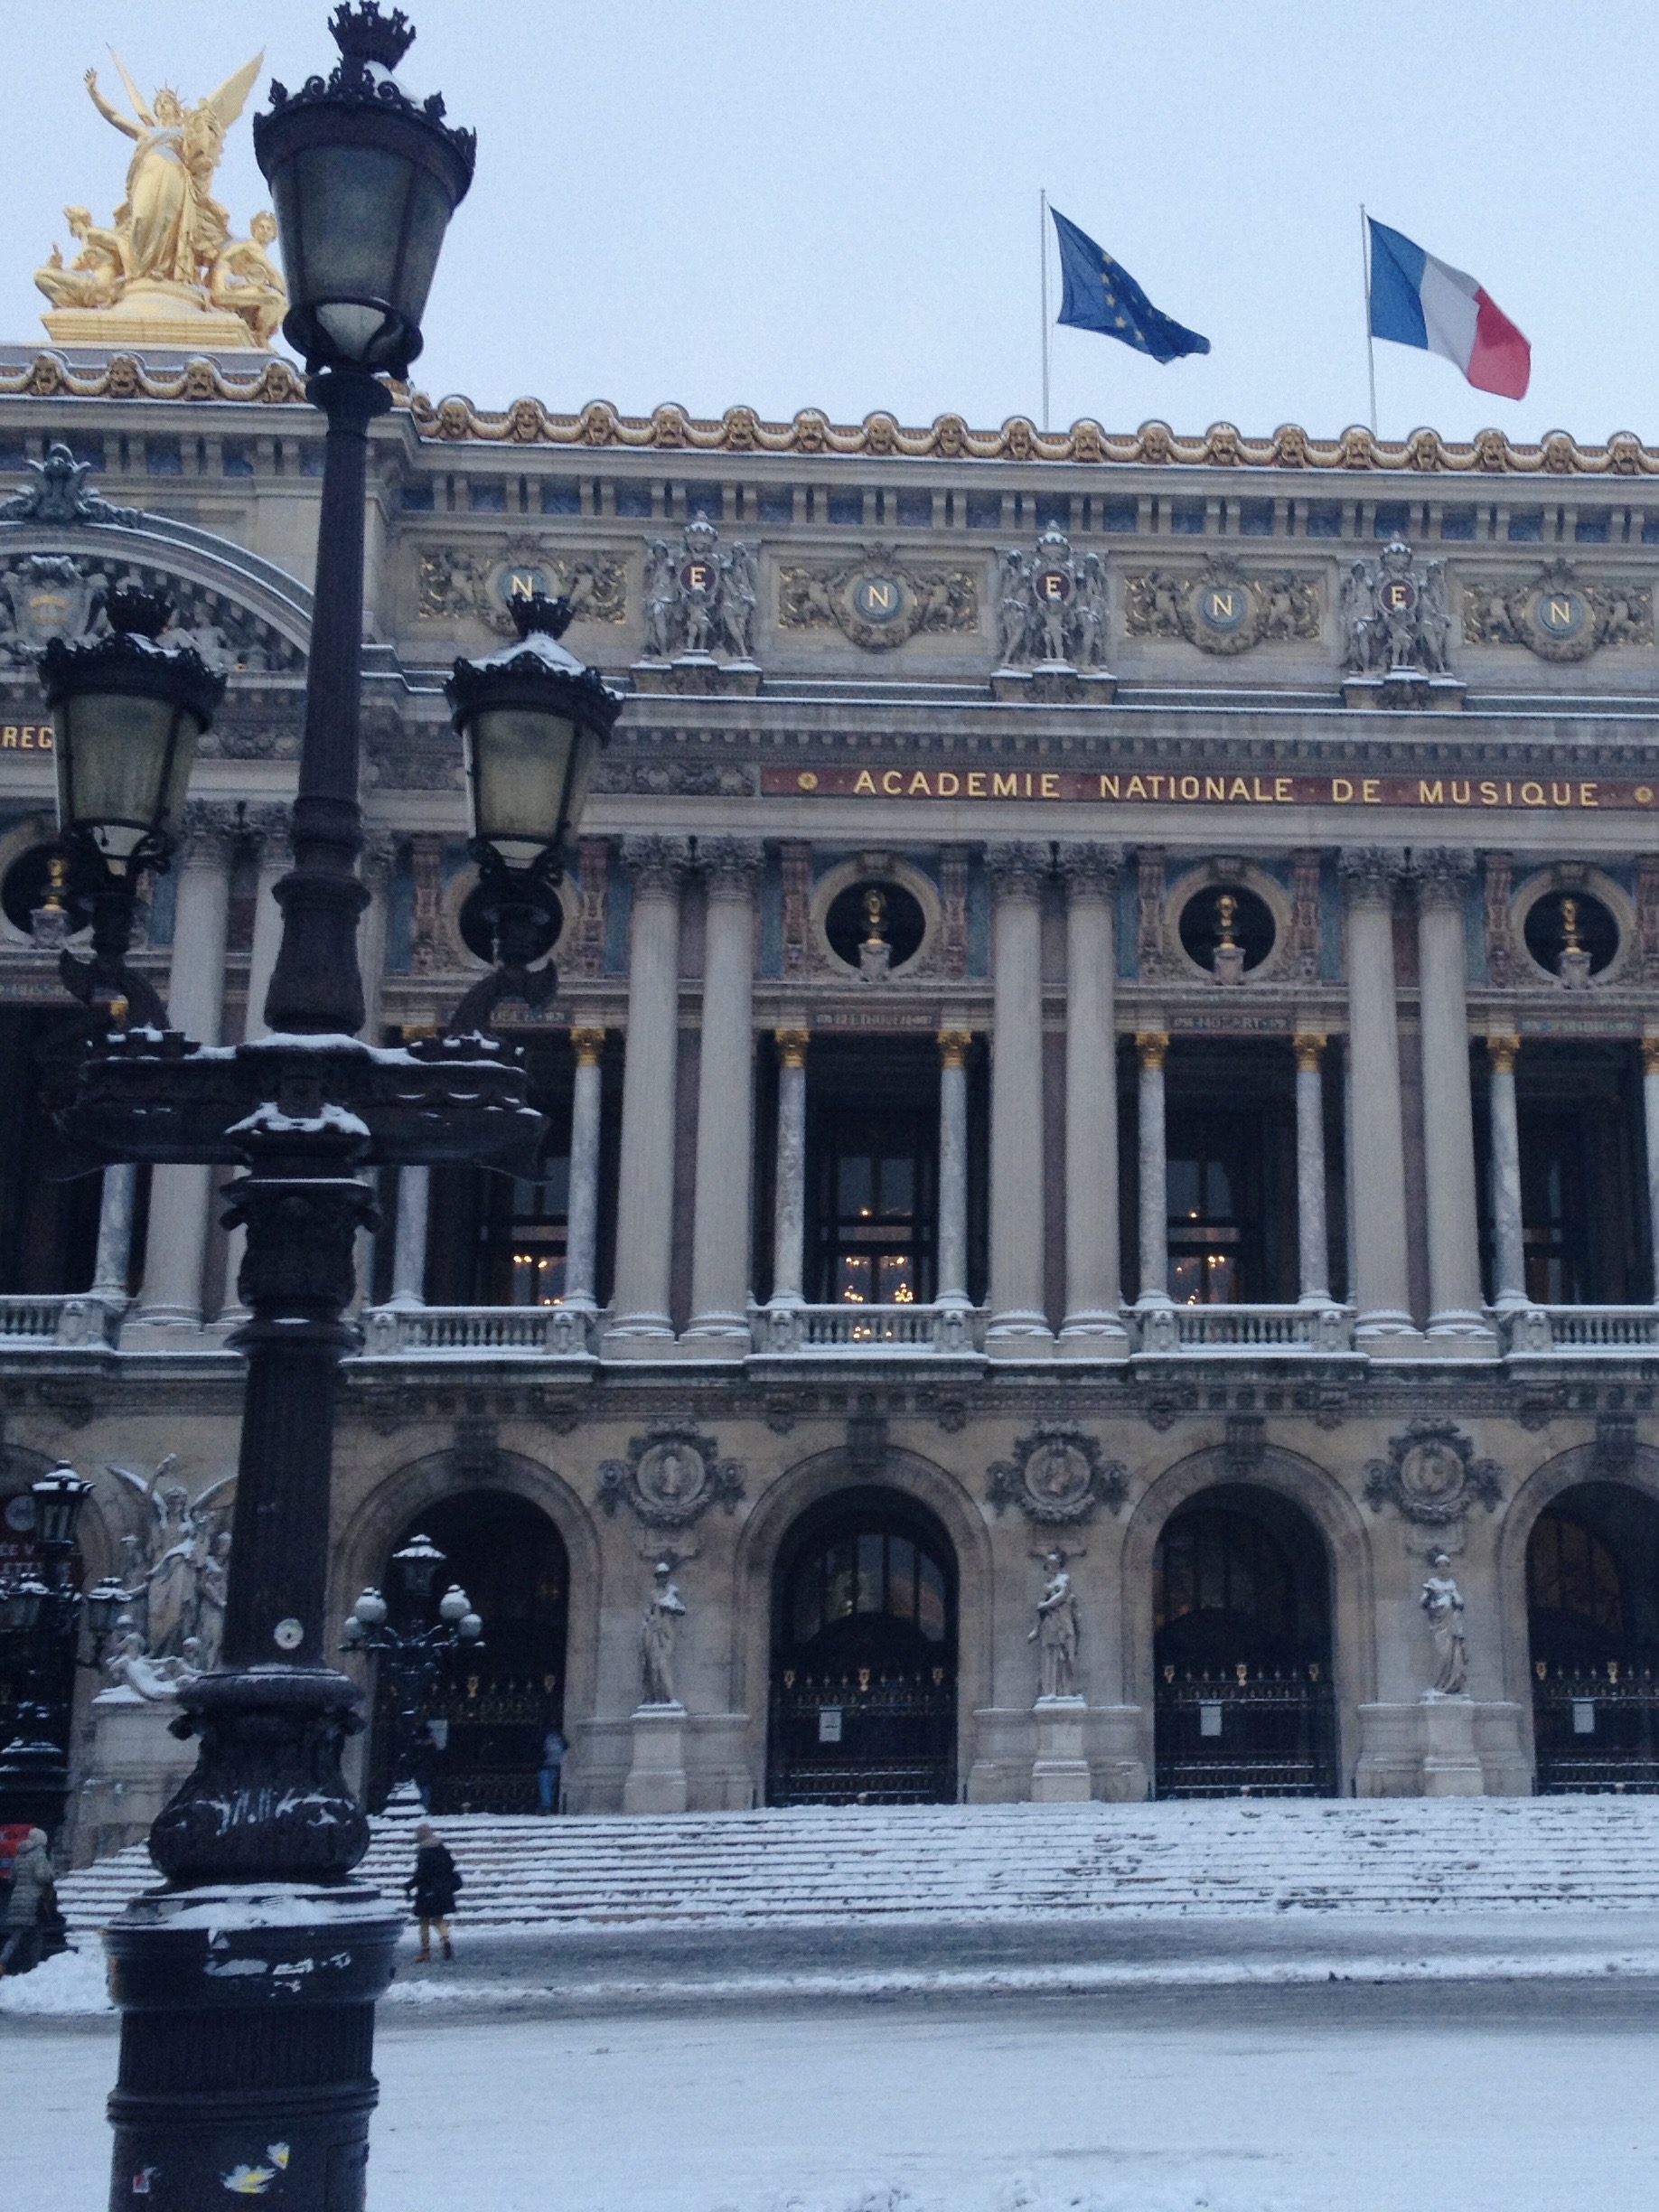 Opera Garnier in winter